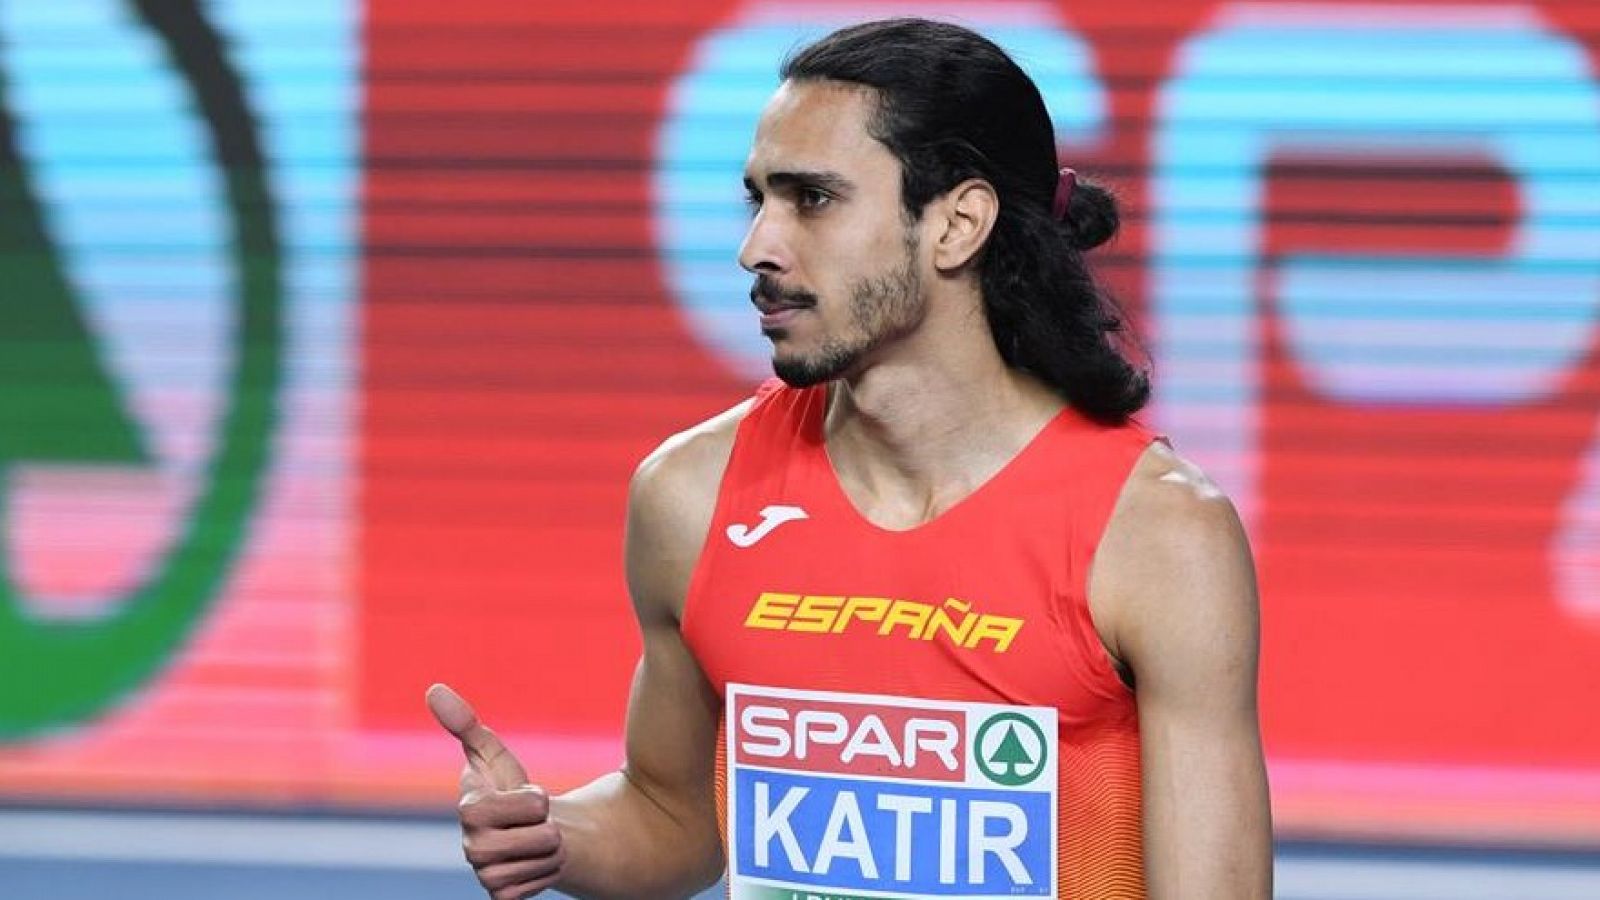 Imagen del atleta español Mohamed Katir durante el pasado Cameponato de Europa en pista cubierta en Polonia.